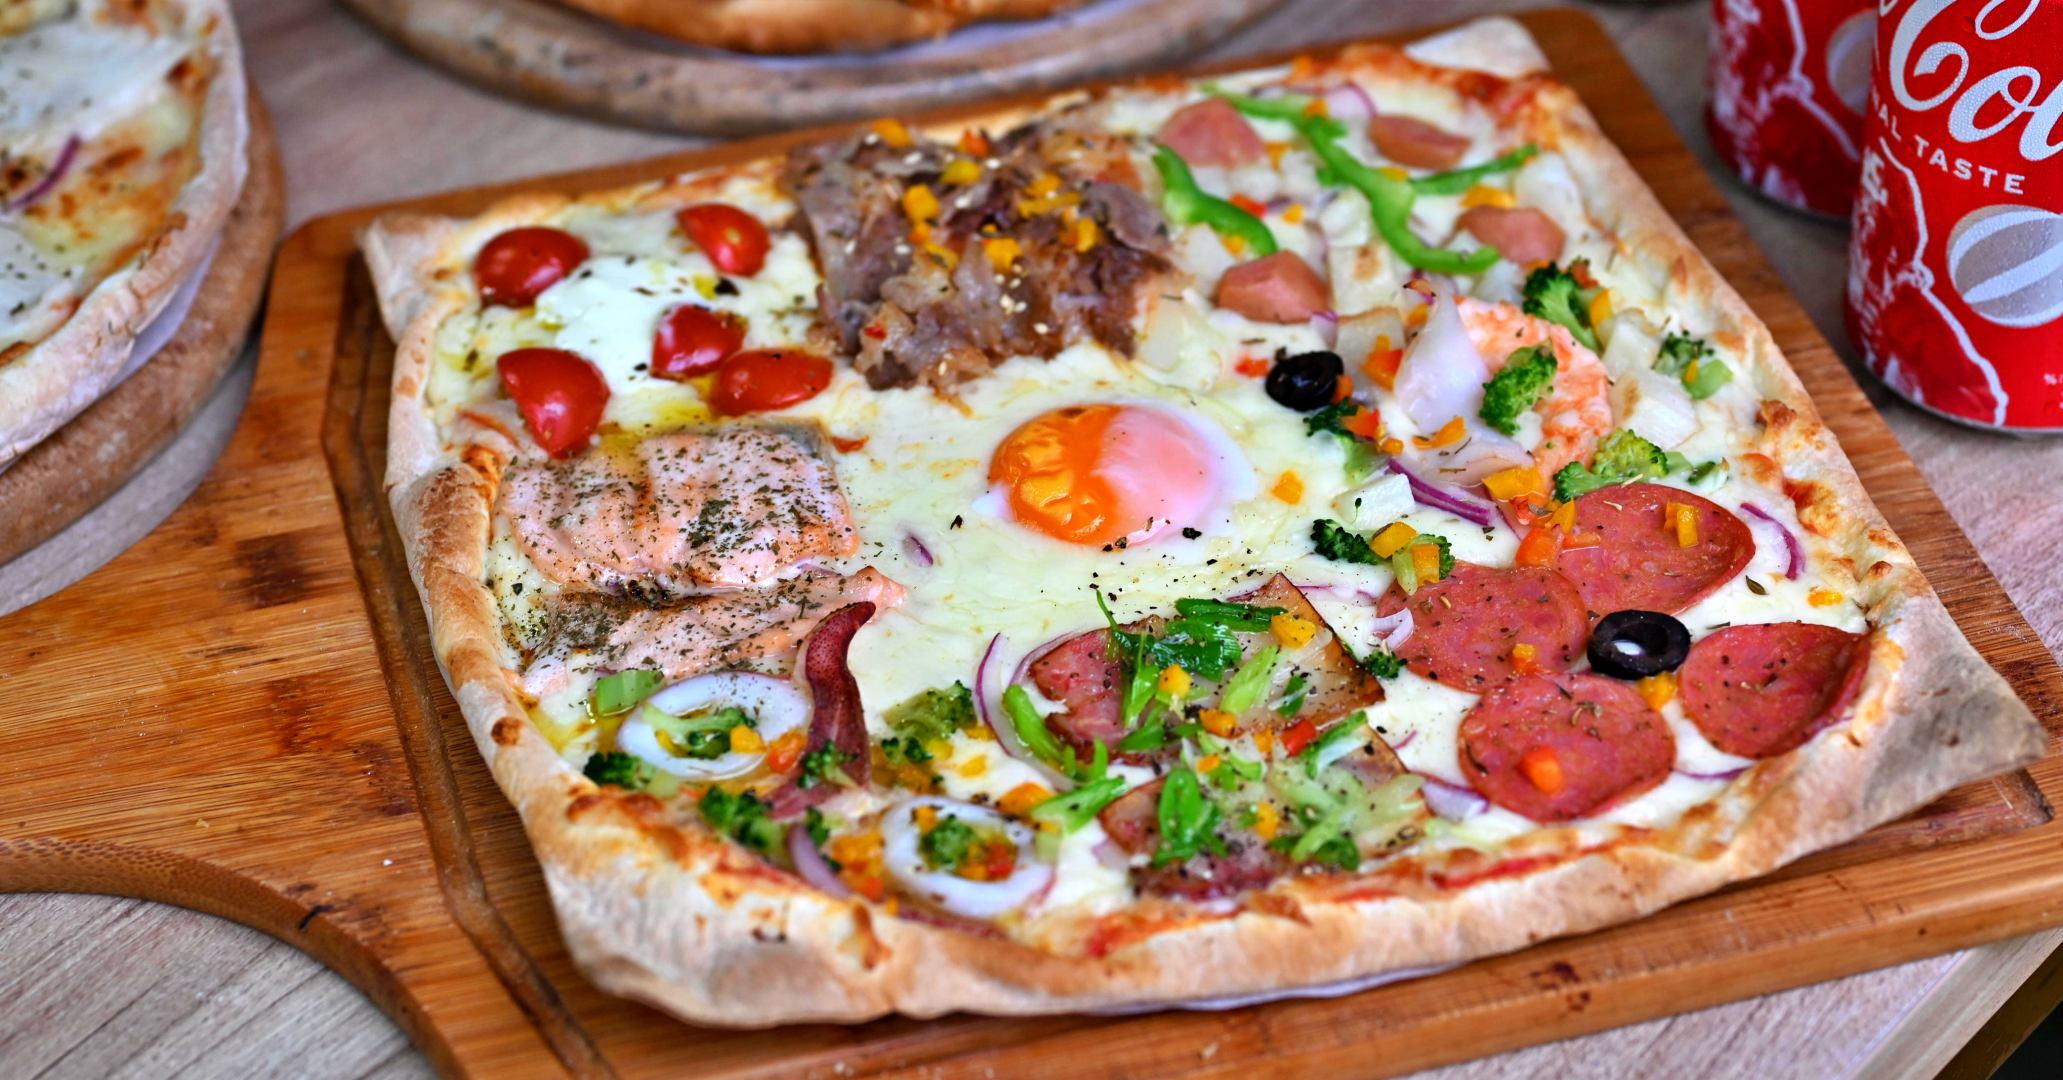 士林美食,愛披薩ipizza,愛披薩,愛披薩菜單,愛披薩推薦 @趁早出門吃飽飽